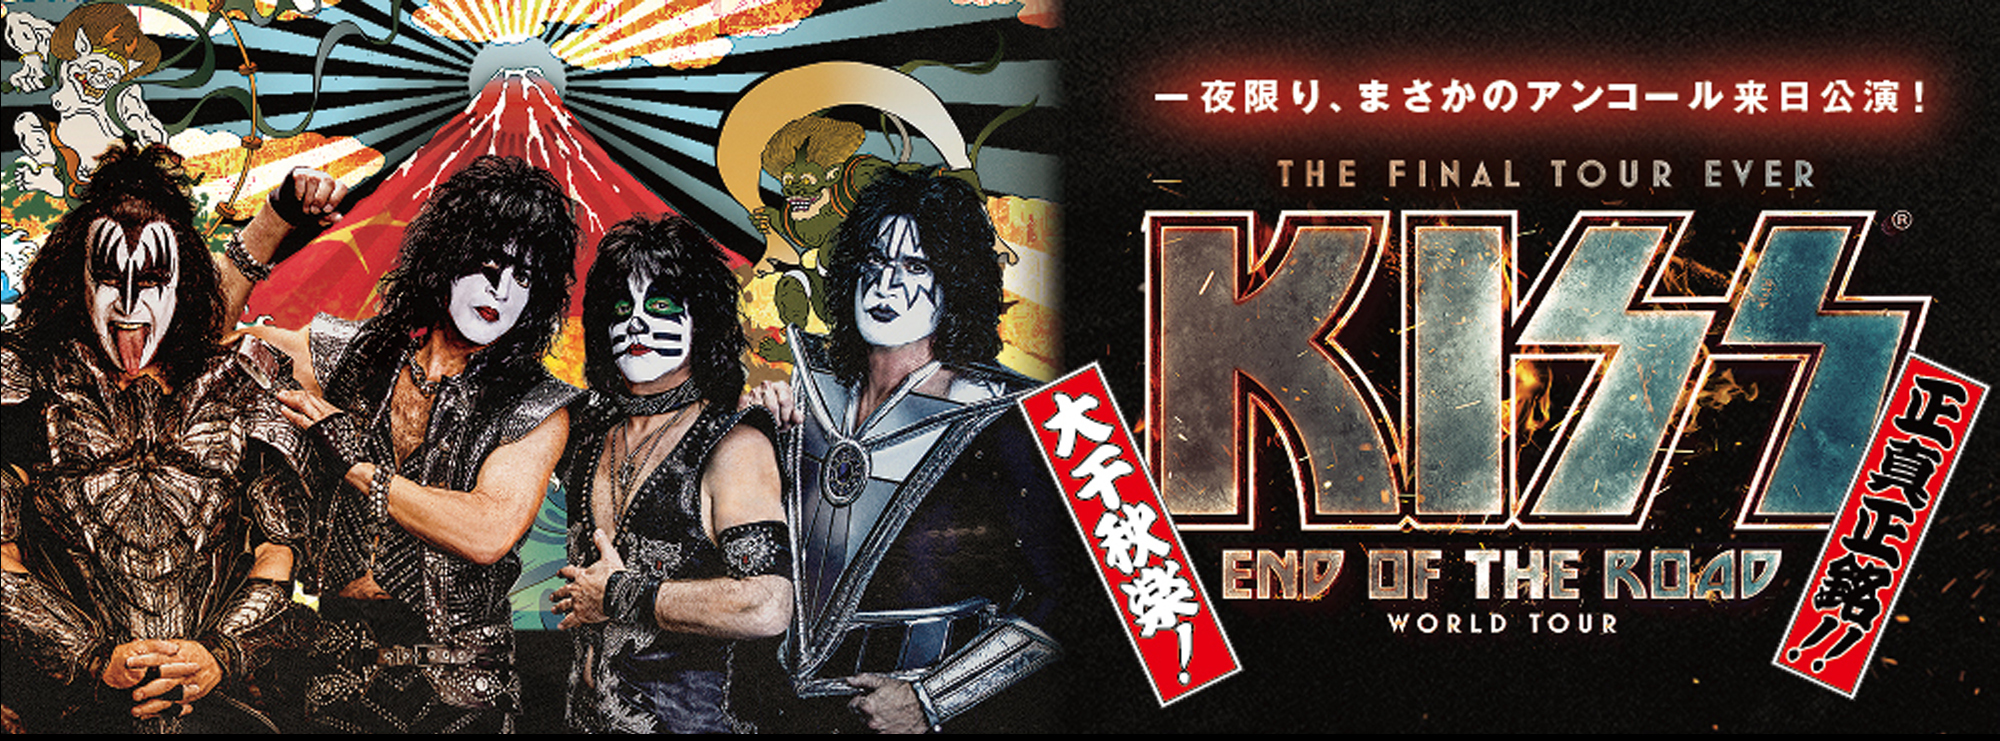 ももクロ×KISS JAPAN TOUR 2015会場限定Tシャツ